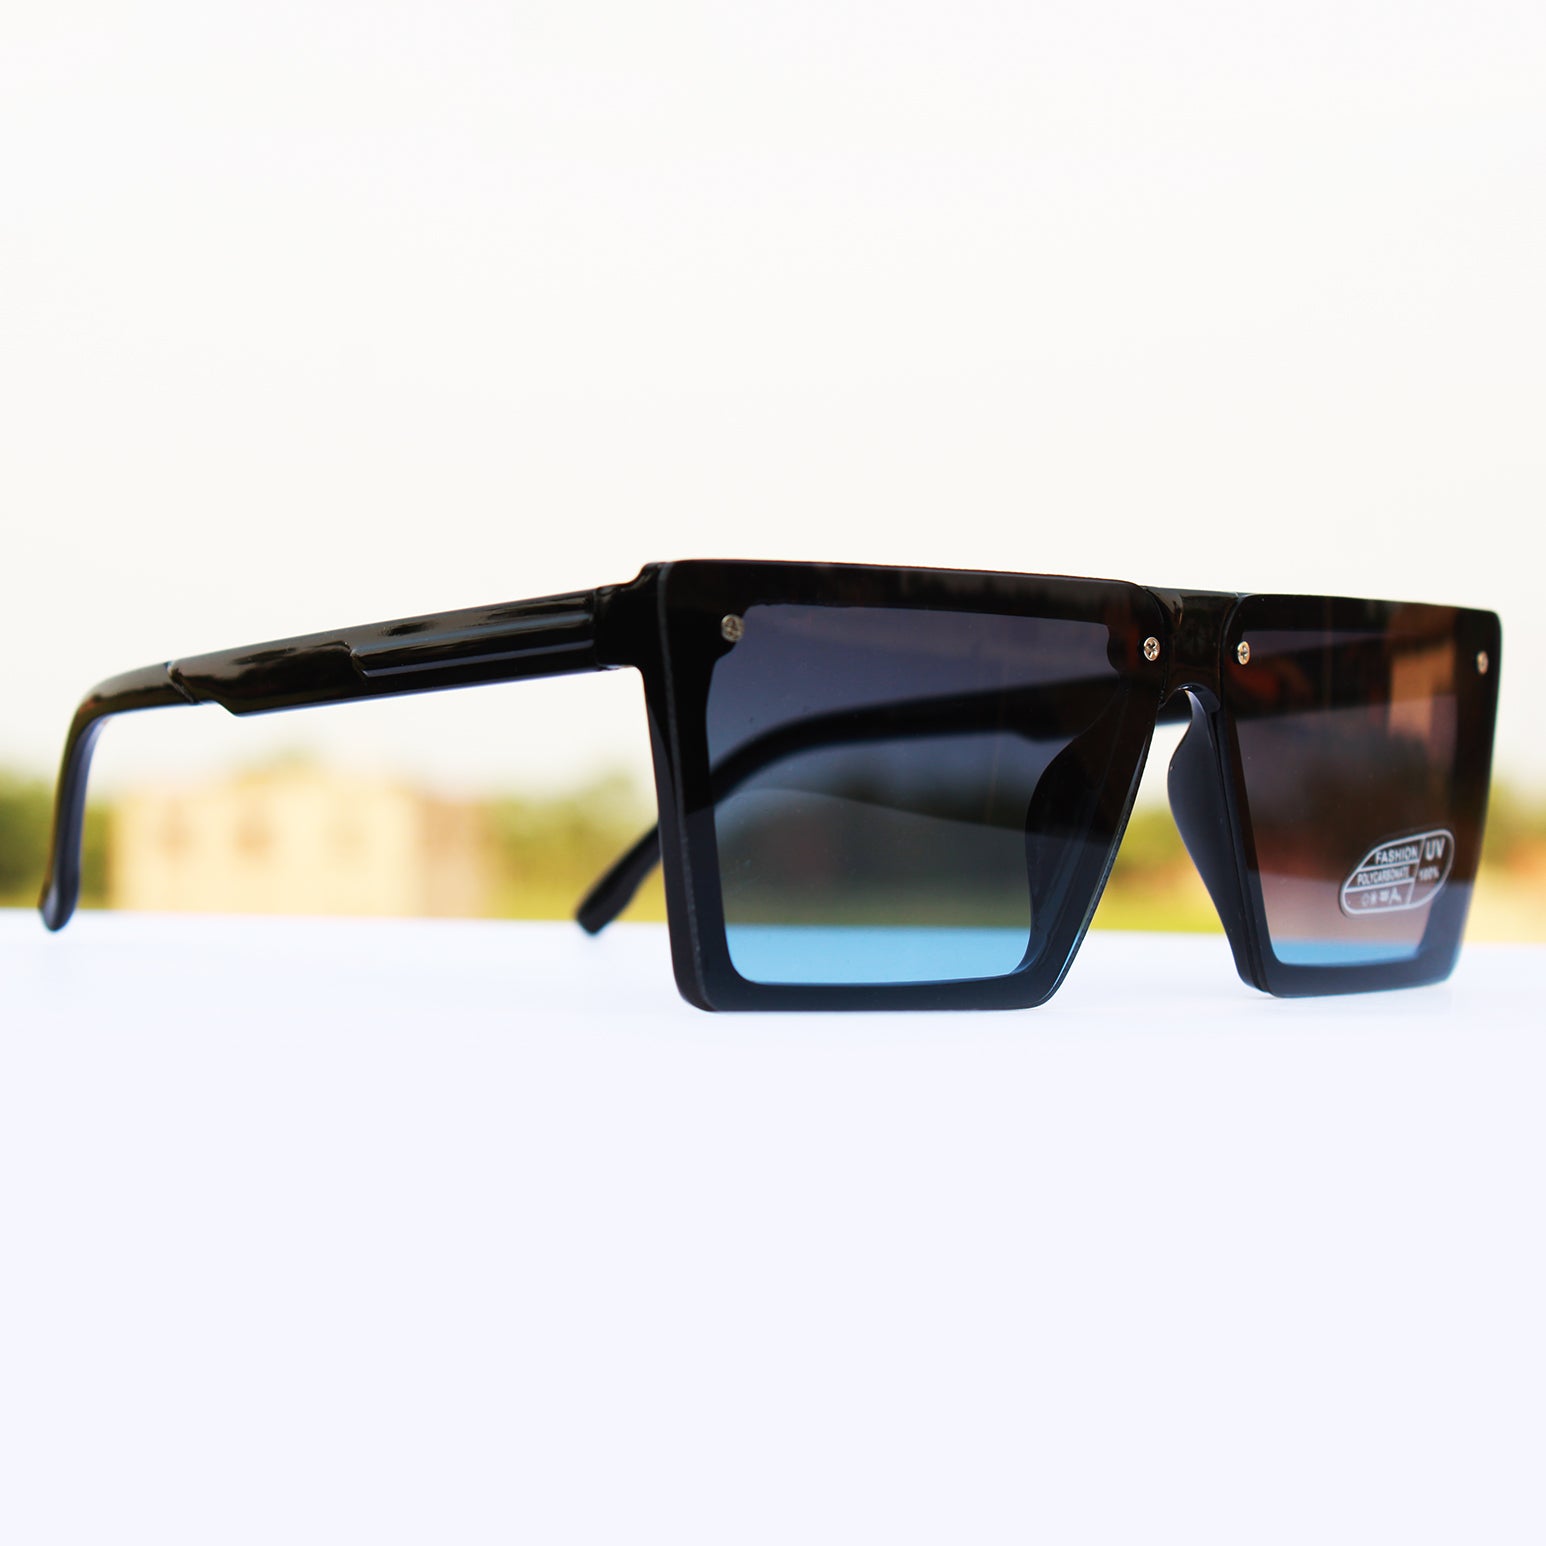 sahil khan LV sunglasses for men and women